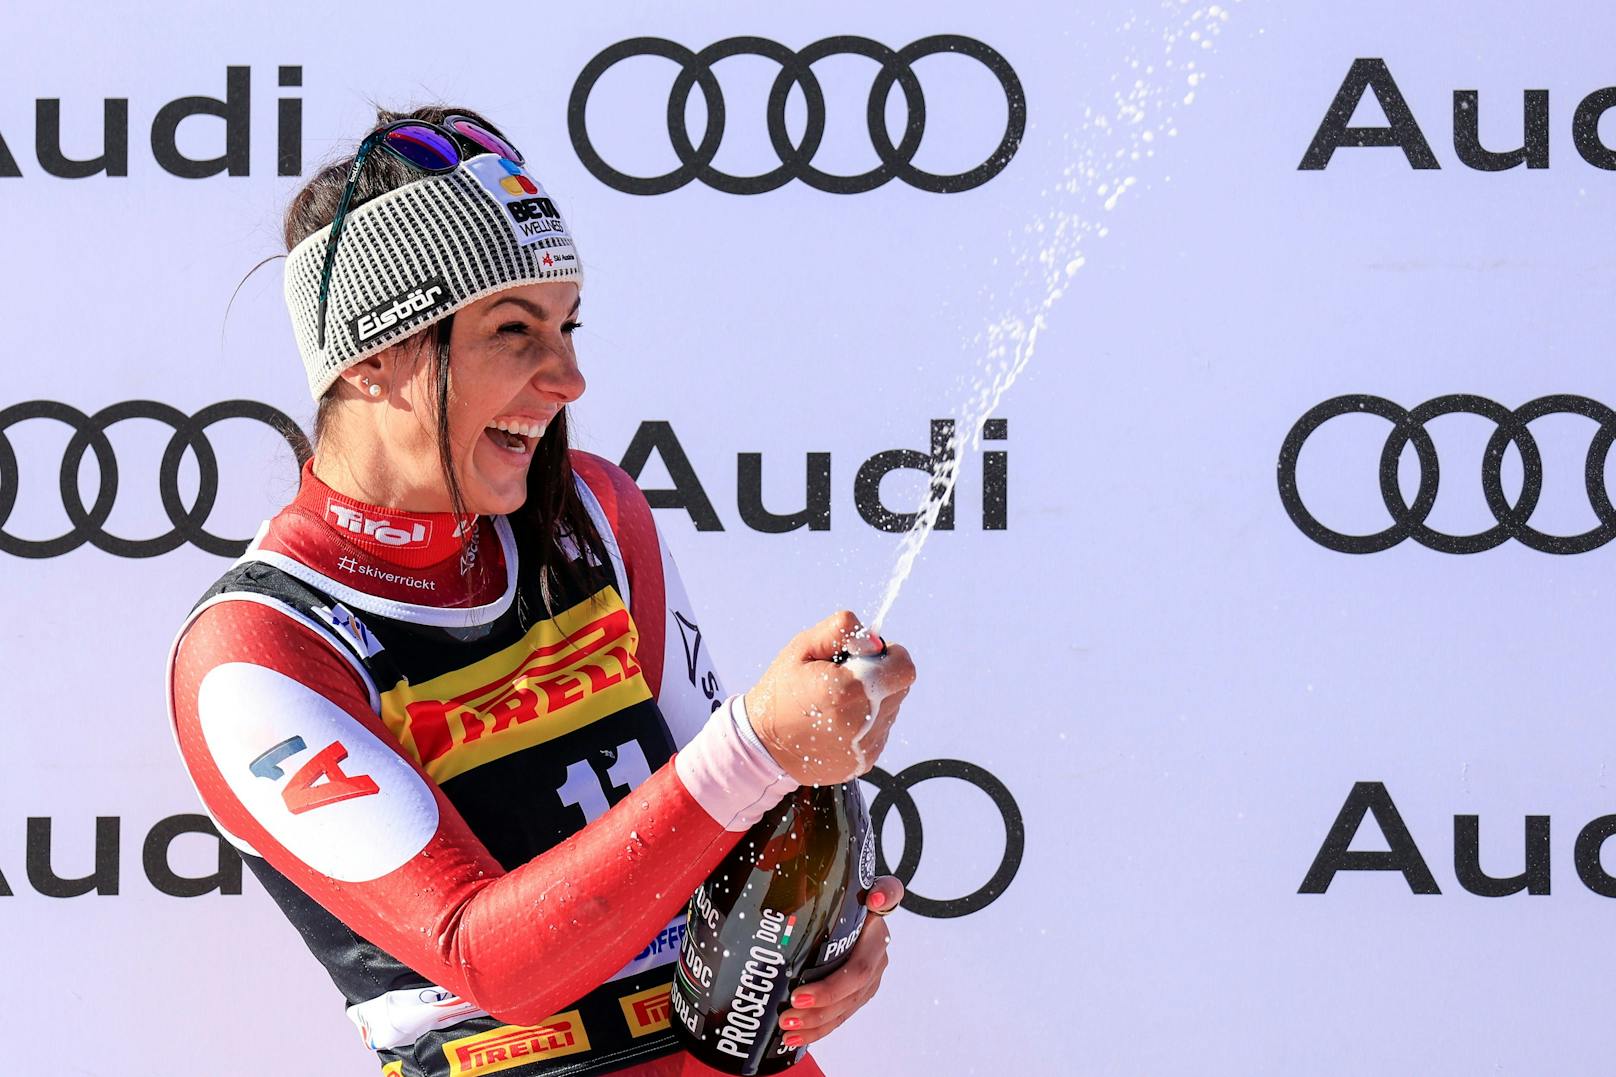 Das Speed-Wochenende in Cortina begann mit einem österreichischen Sieg. Stephanie Venier raste auf Platz eins, ließ sich feiern. Mit Christina Ager (4.), Cornelia Hütter (8.) und Mirjam Puchner (9.) fuhren drei weitere Österreicherinnen in die Top-10, rundeten ein gutes Mannschaftsergebnis ab.